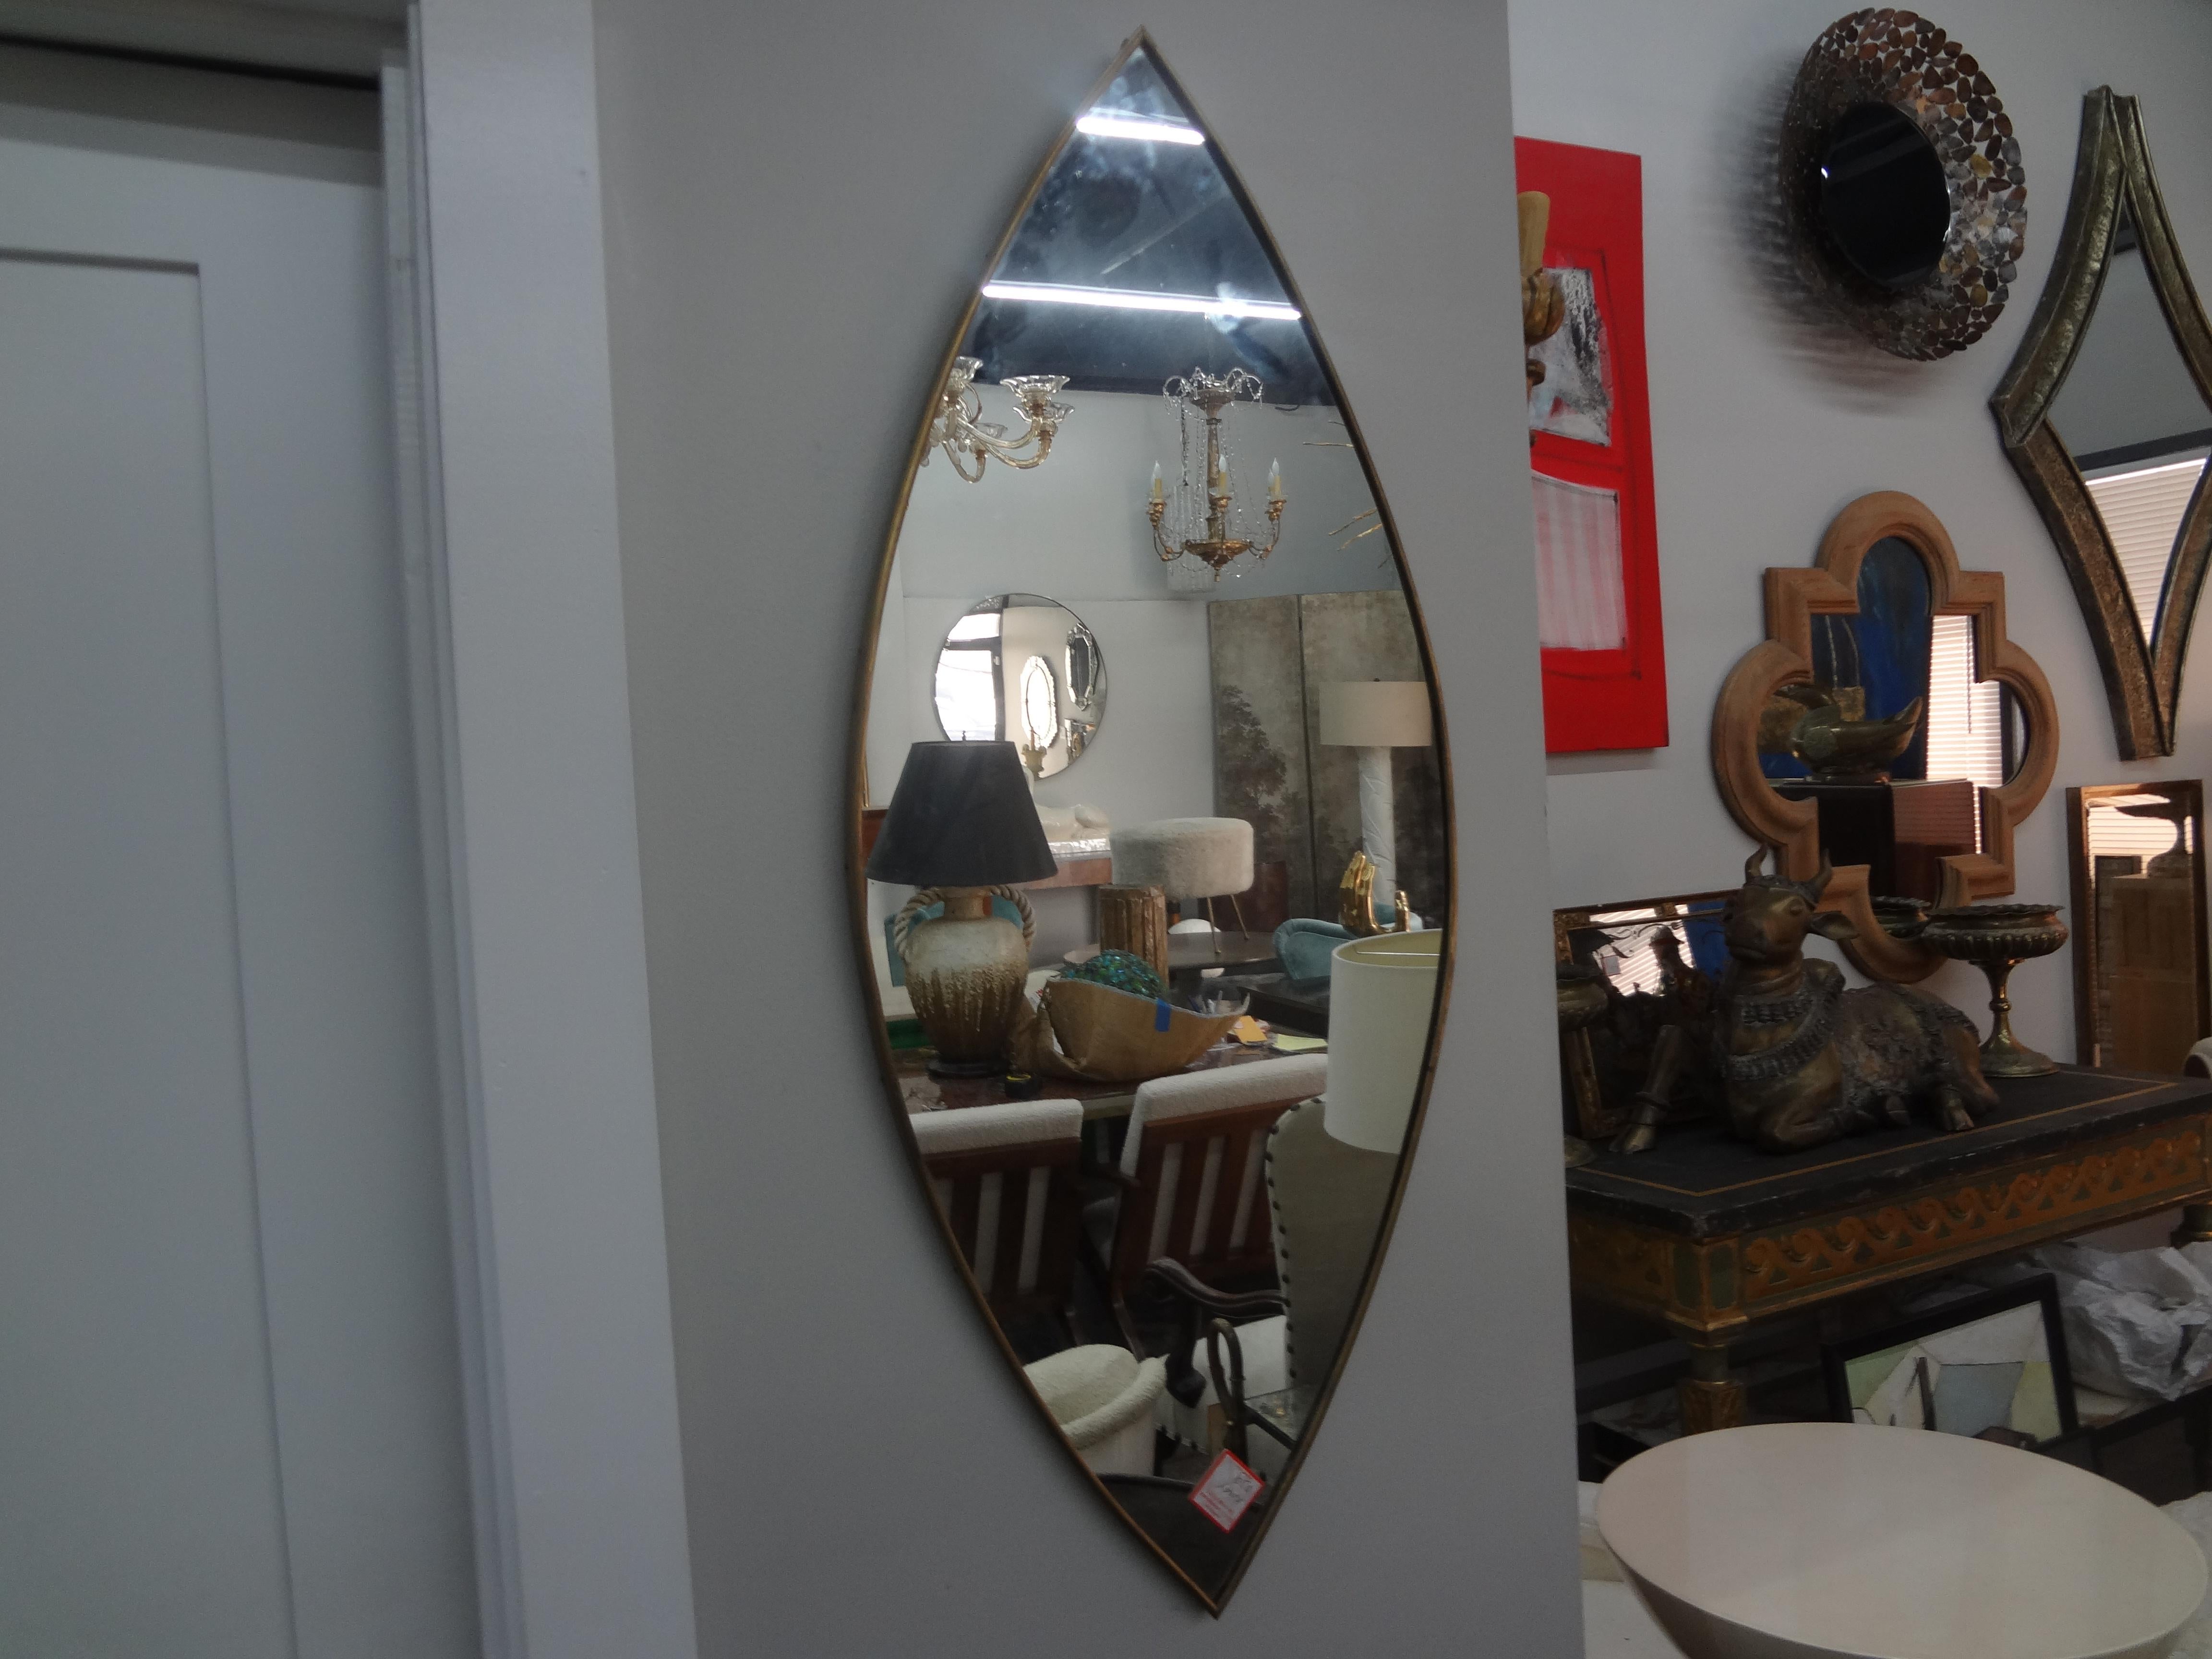 Miroir moderne italien en laiton inspiré de Gio Ponti.
Notre superbe miroir en laiton italien aux formes galbées serait parfait dans une salle d'eau ou un dressing.
Charmant !